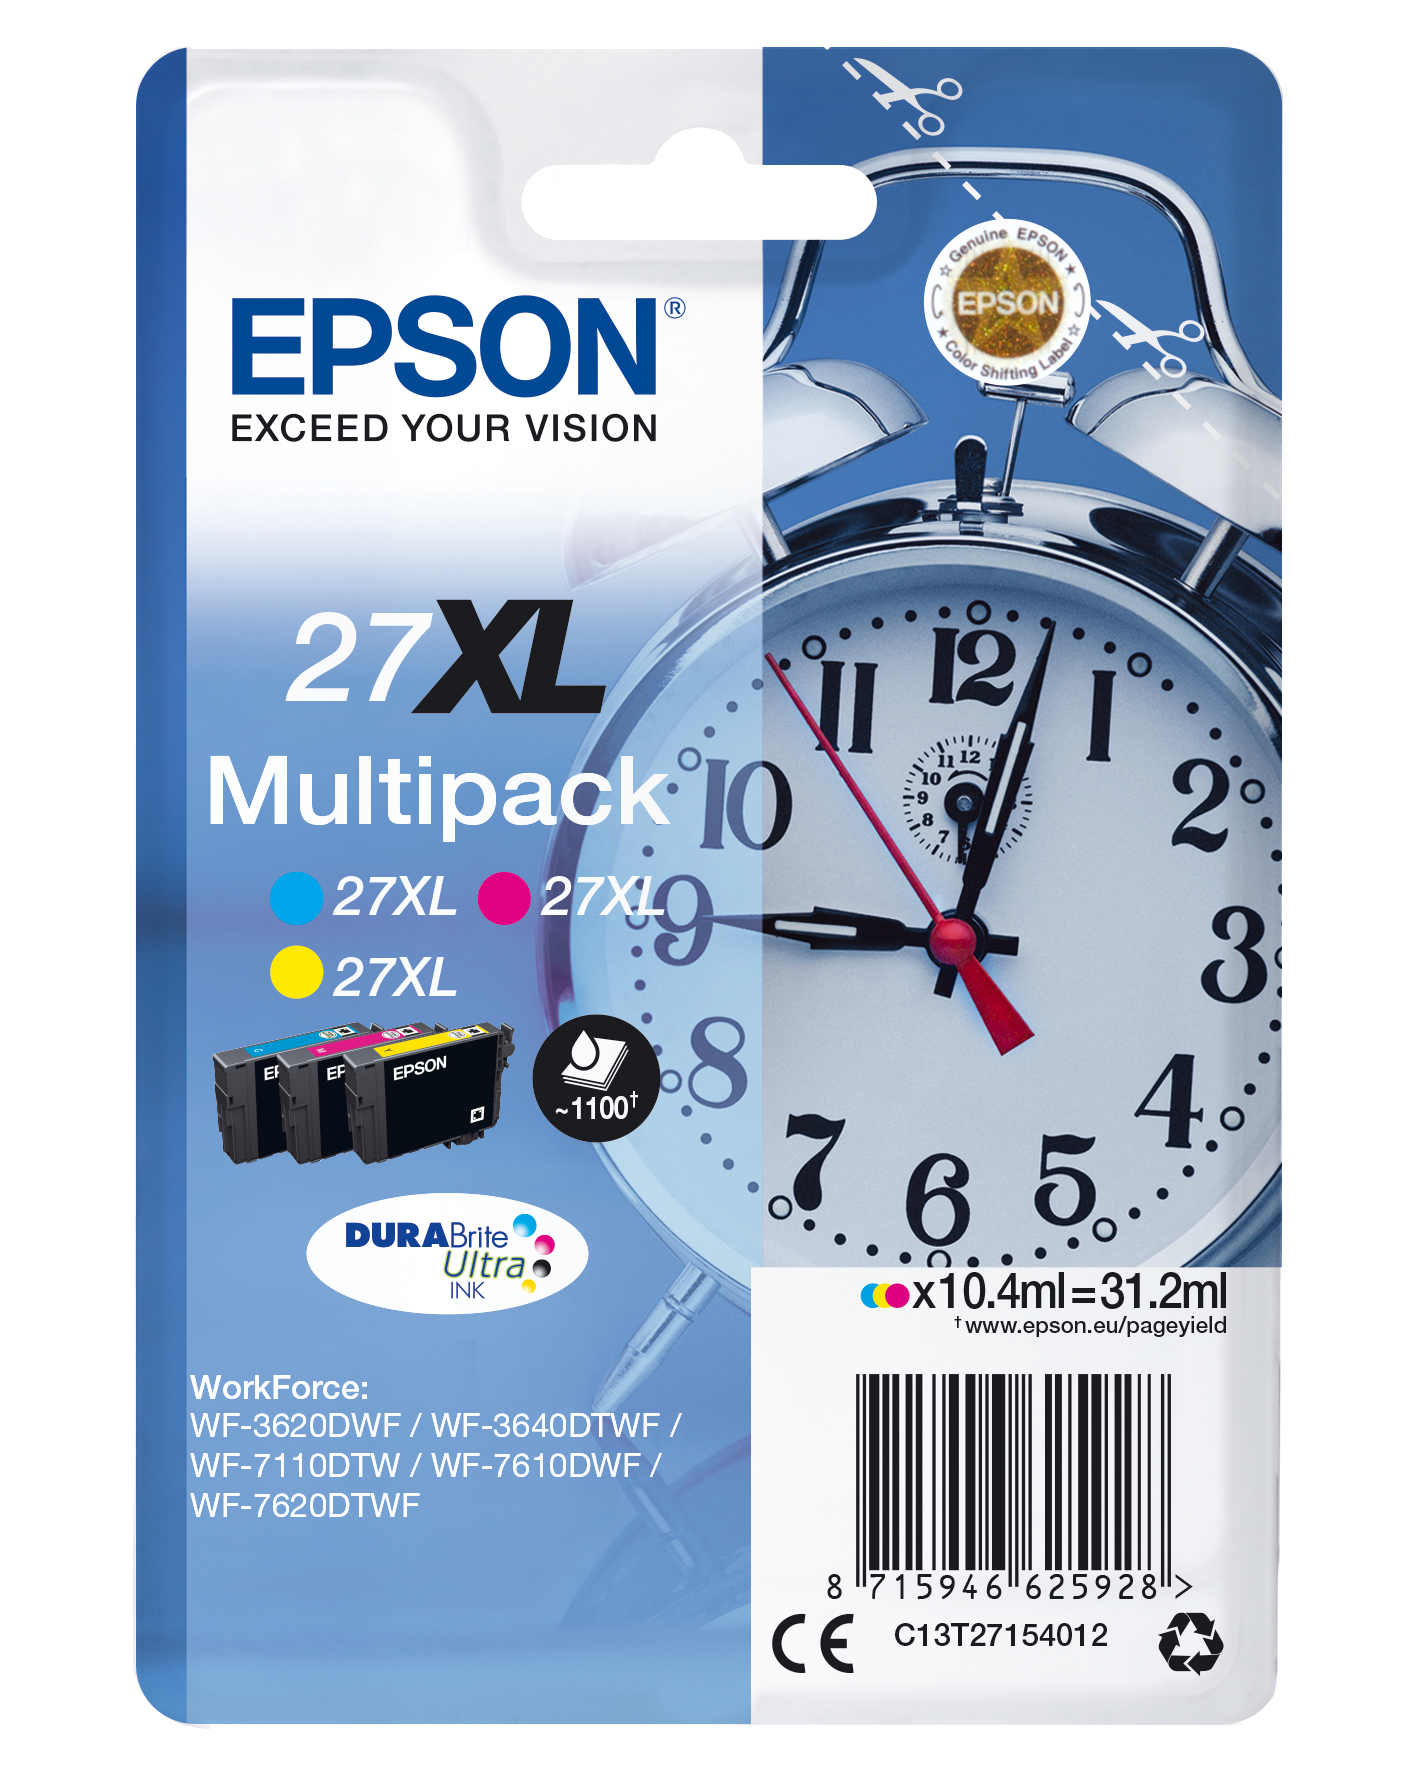 Epson 29 multipack 4 kleuren